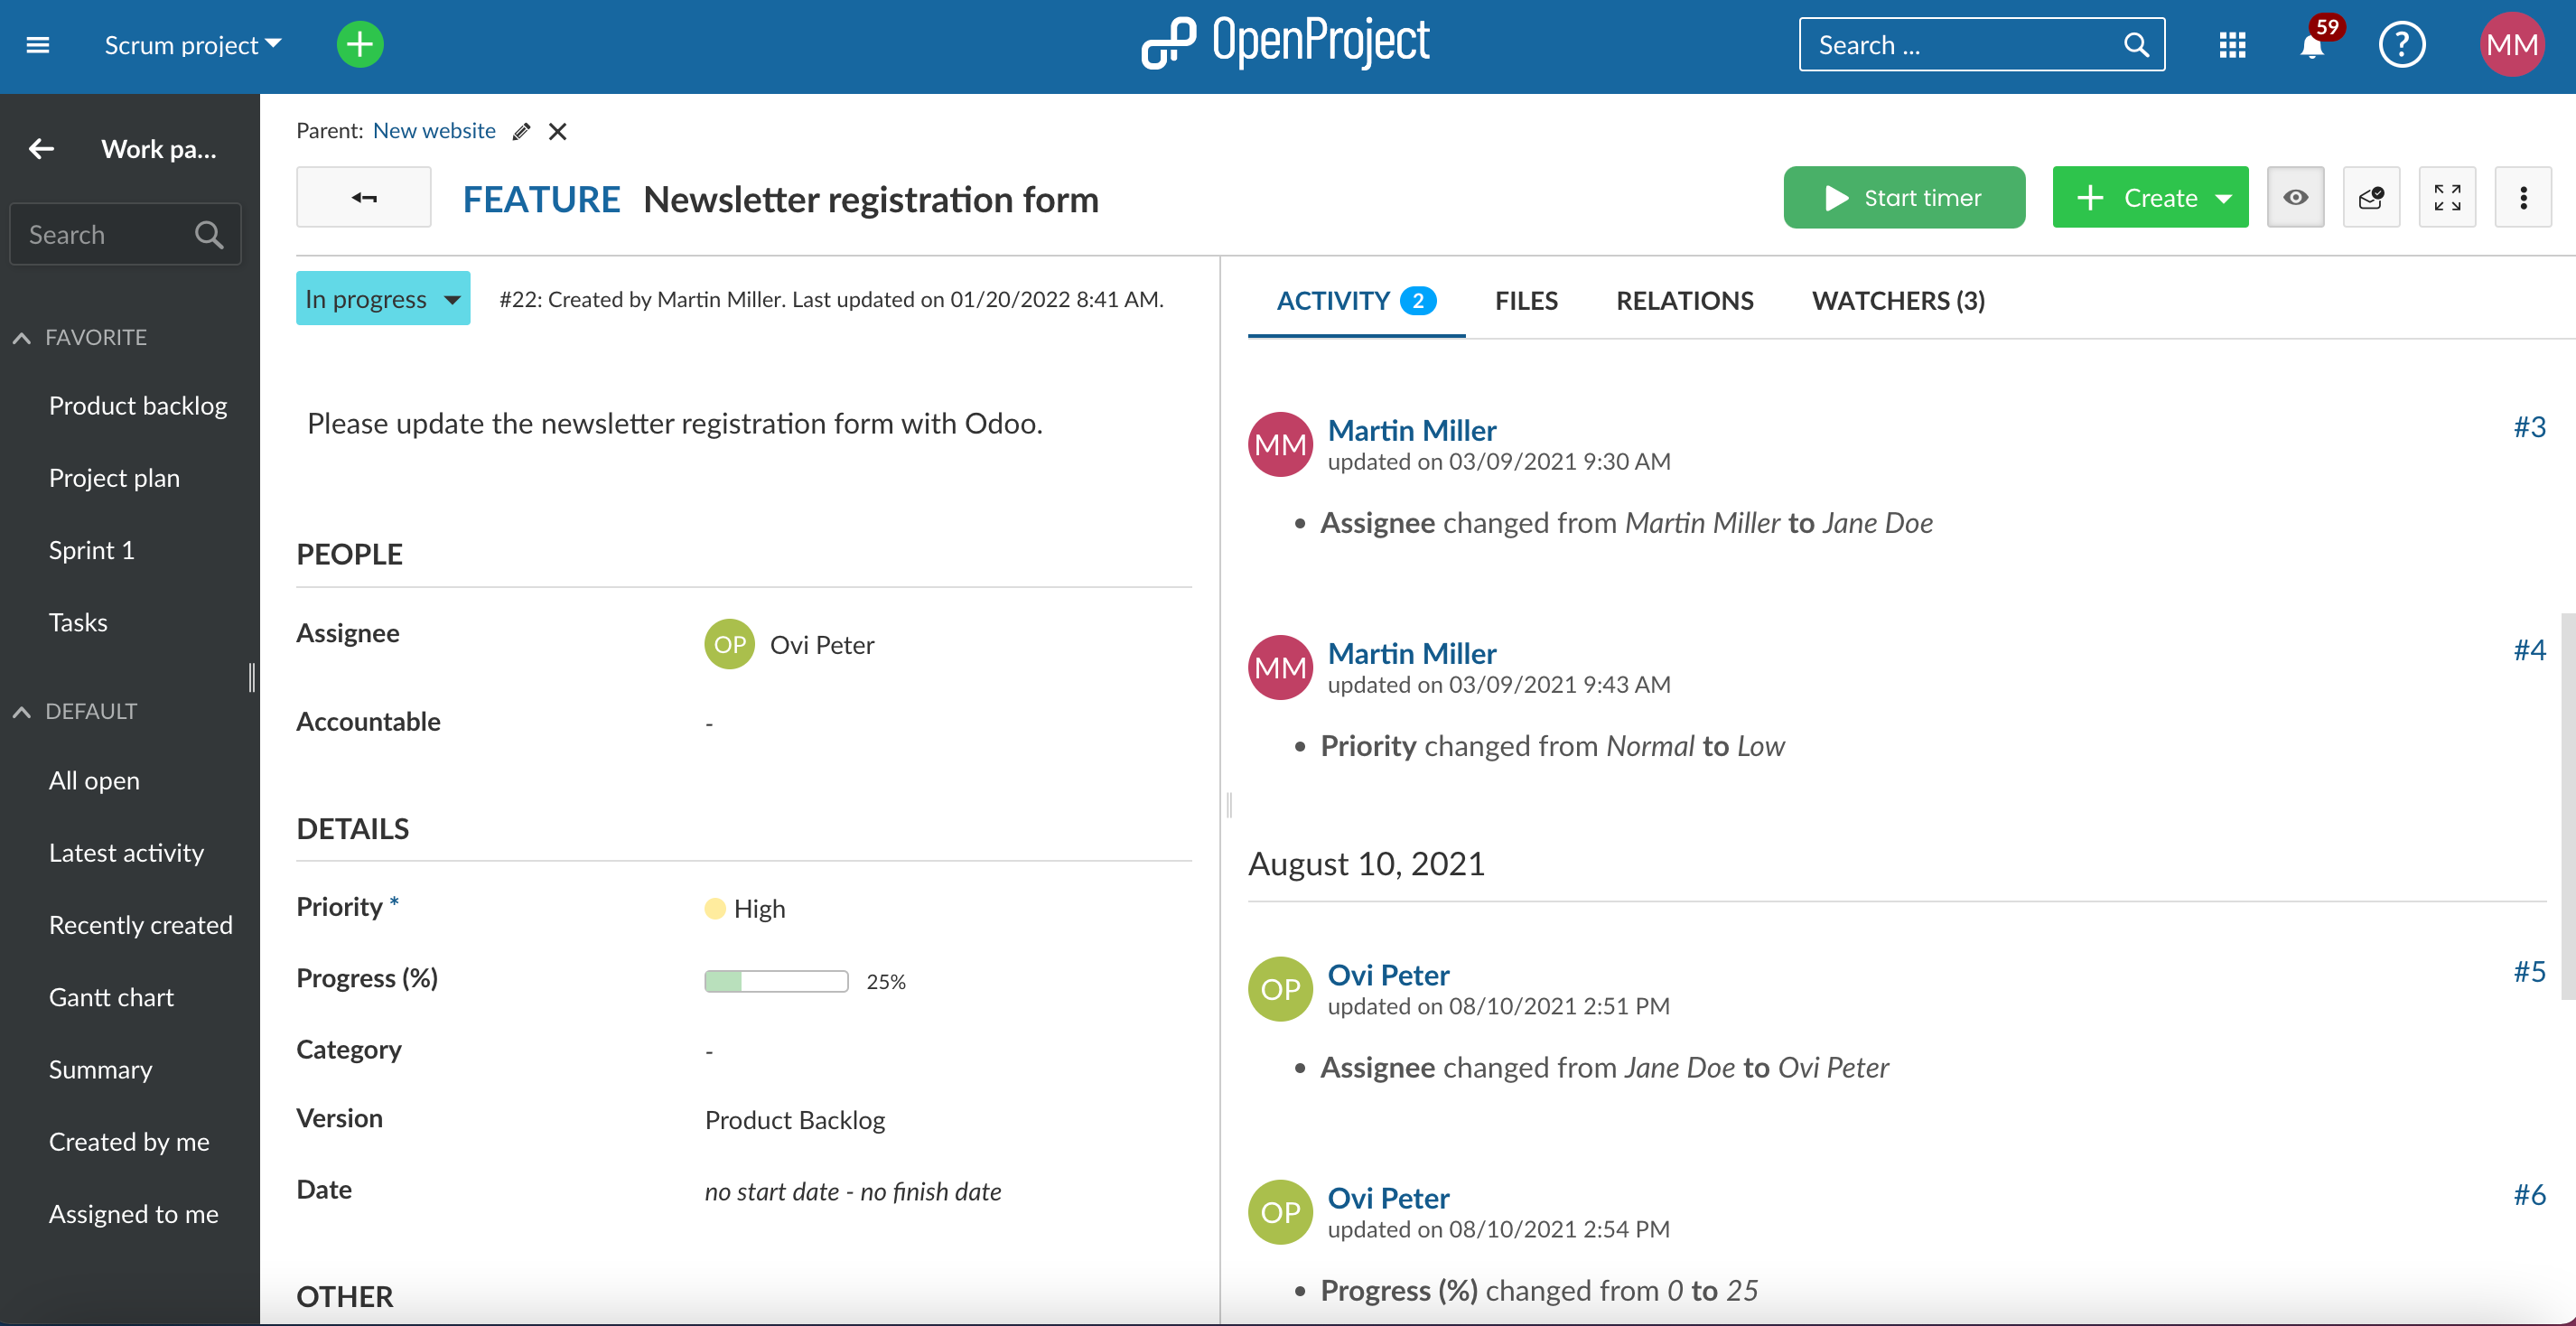 Vista detallada del paquete de trabajo de OpenProject con botón verde de inicio para iniciar el temporizador